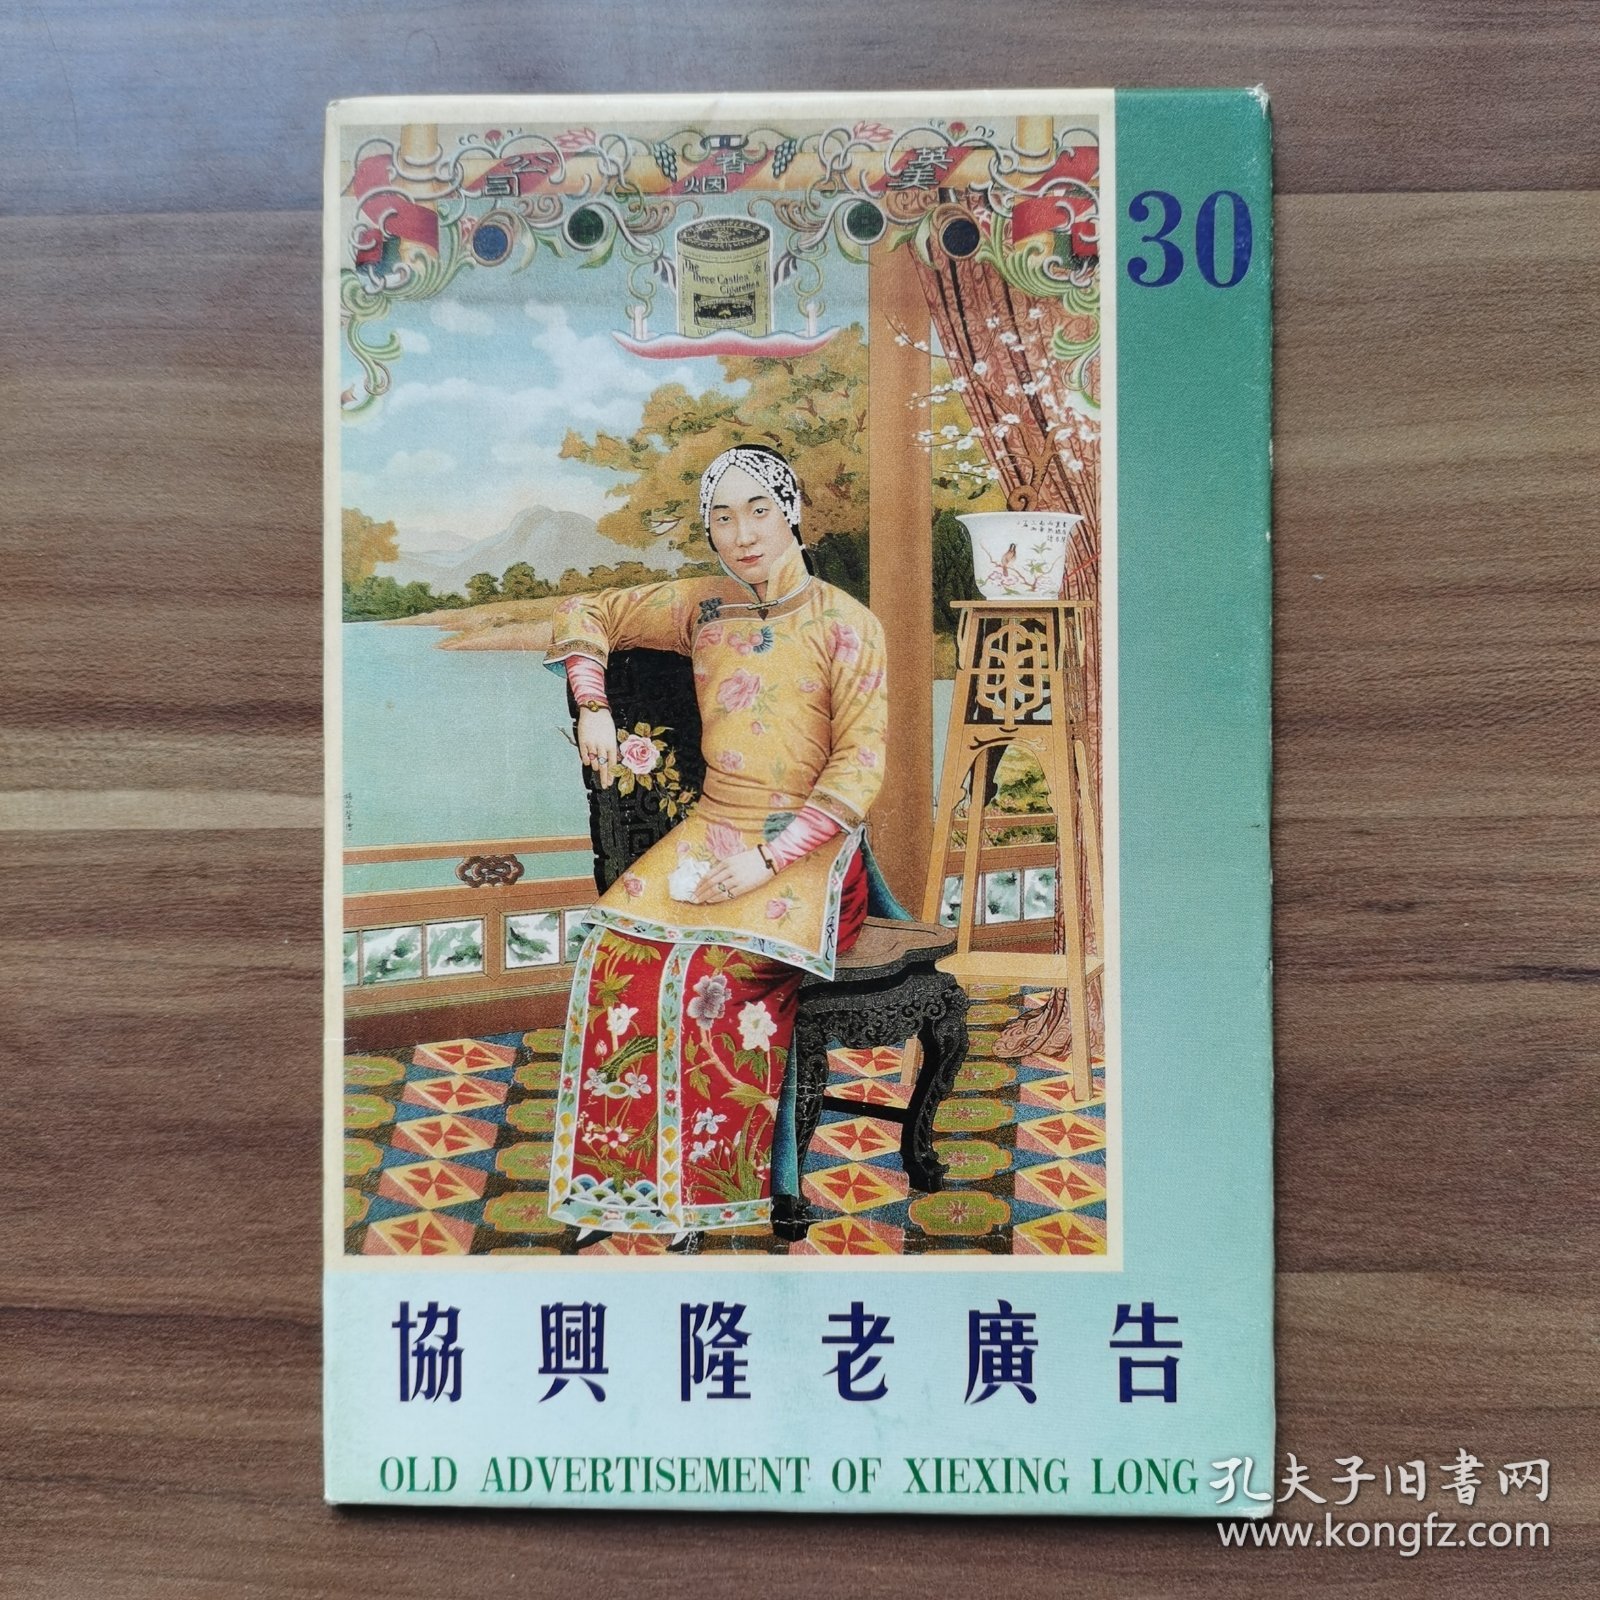 老上海《协兴隆老广告》明信片系列（30），共八张，外带封套，上有“”郑成功”“林吉源某和茶”“百代唱片”“上海棕榄公司”字样。